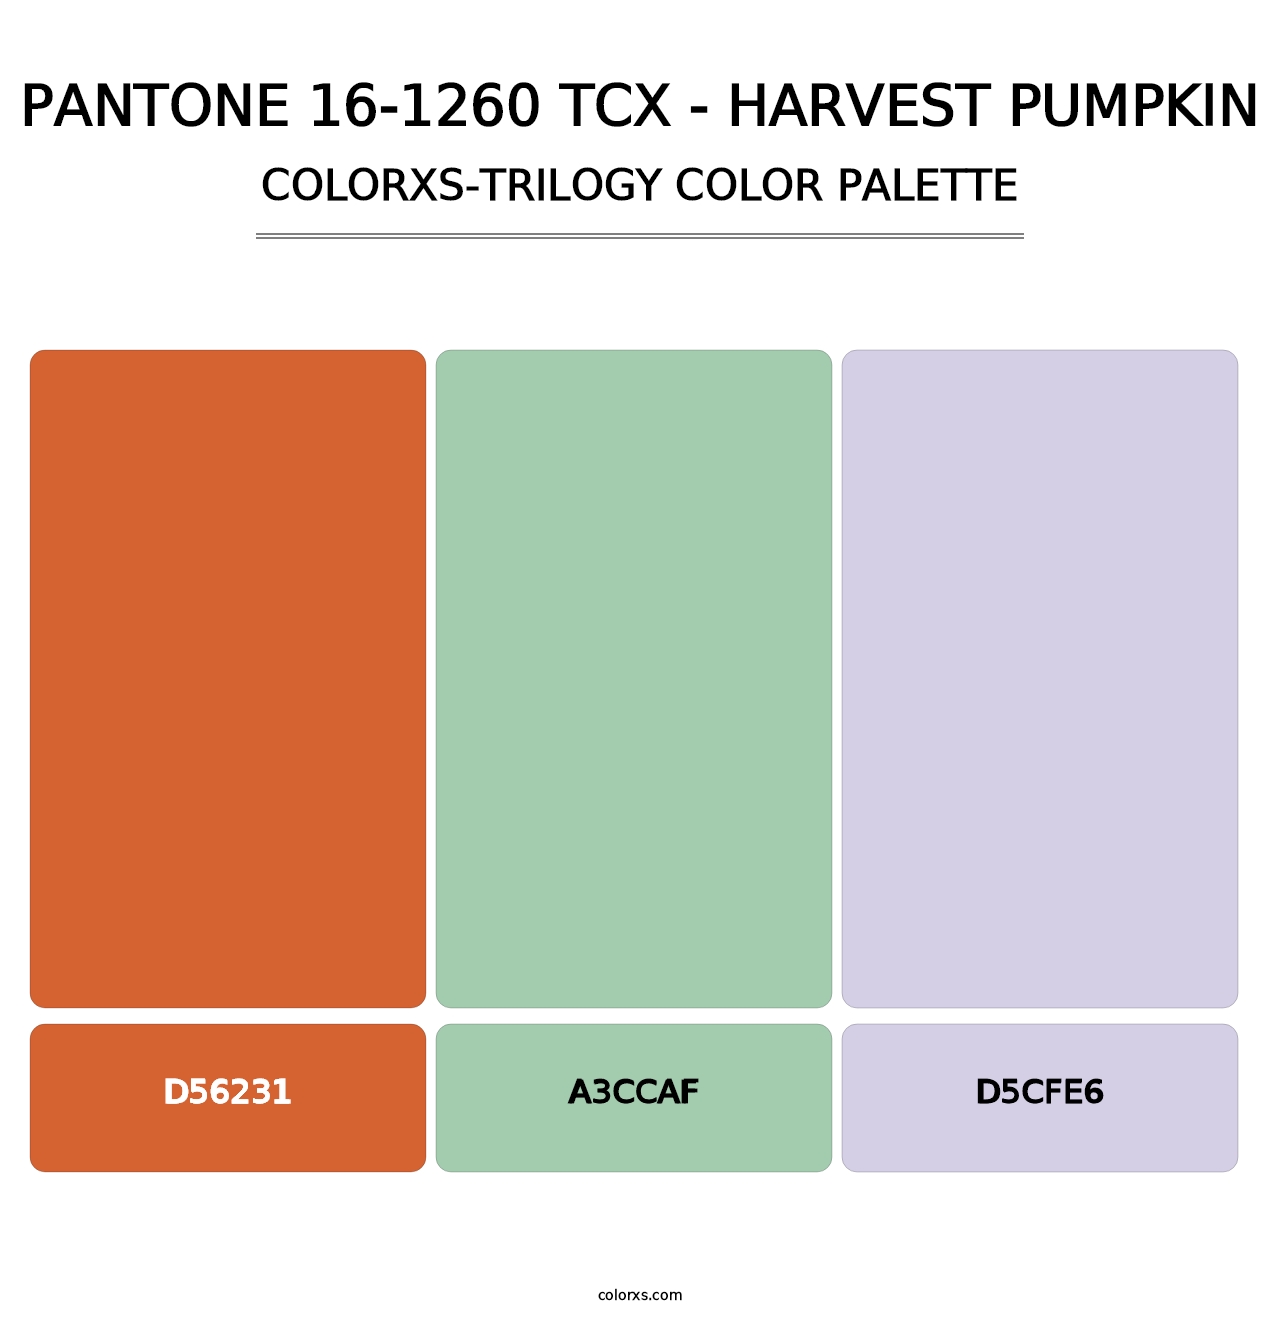 PANTONE 16-1260 TCX - Harvest Pumpkin - Colorxs Trilogy Palette